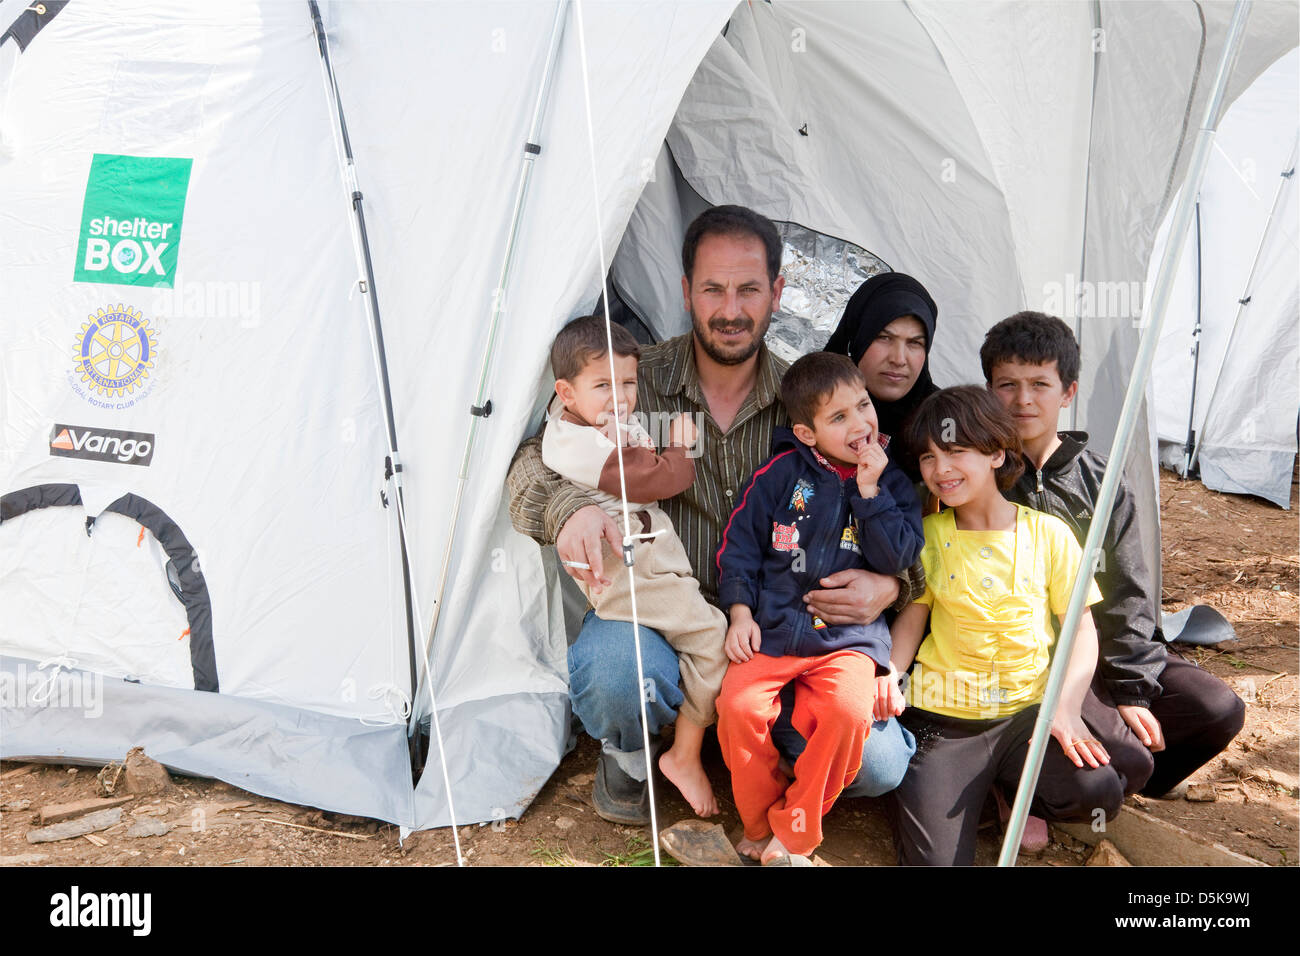 Familia de refugiados, procedentes de Homs en un improvisado campamento de refugiados en el Líbano Minie, NE con su nueva tienda ShelterBox Foto de stock